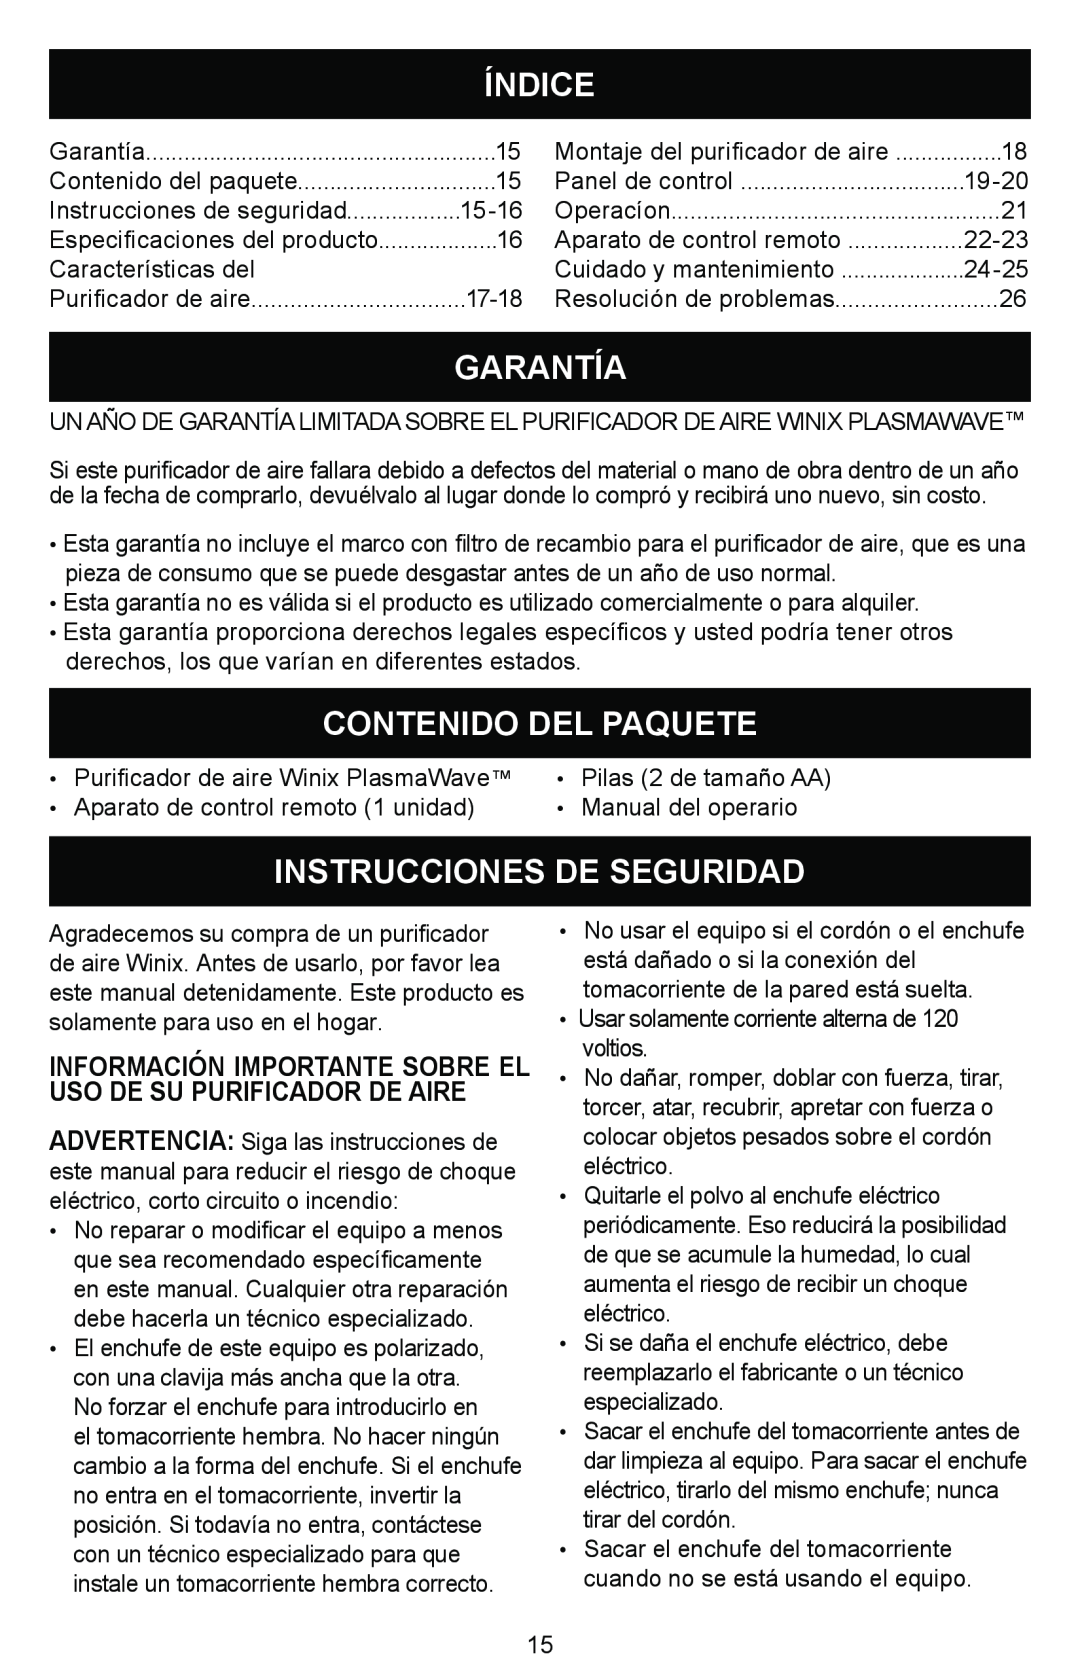 Winix Air Cleaner manual Índice, Garantía, Contenido Del Paquete, Instrucciones De Seguridad 